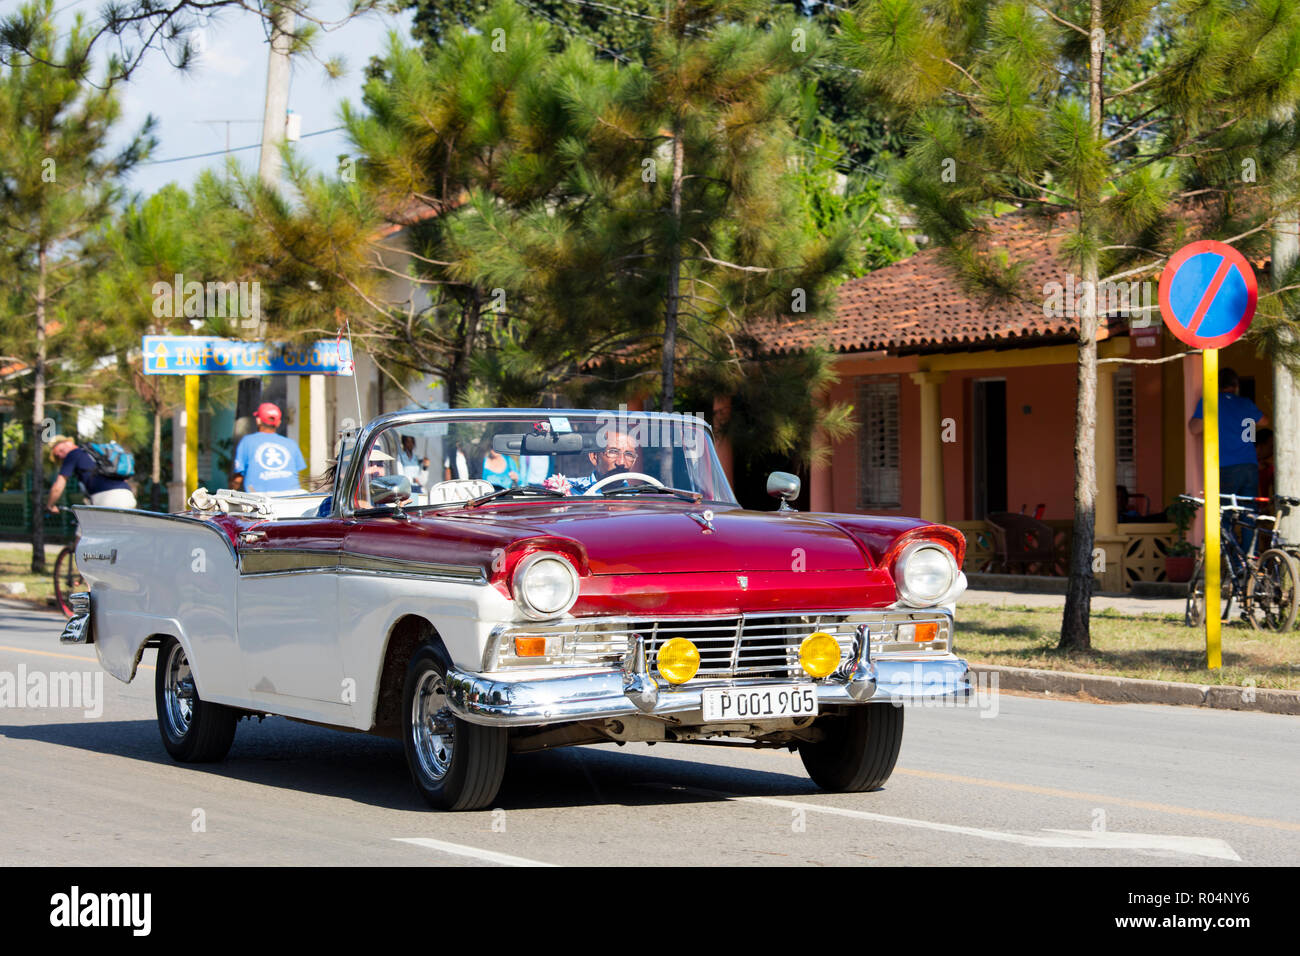 Rote und weiße Cabrio Oldtimer Taxi auf der Hauptstraße in Vinales, Weltkulturerbe der UNESCO, Kuba, Karibik, Karibik, Zentral- und Lateinamerika Stockfoto